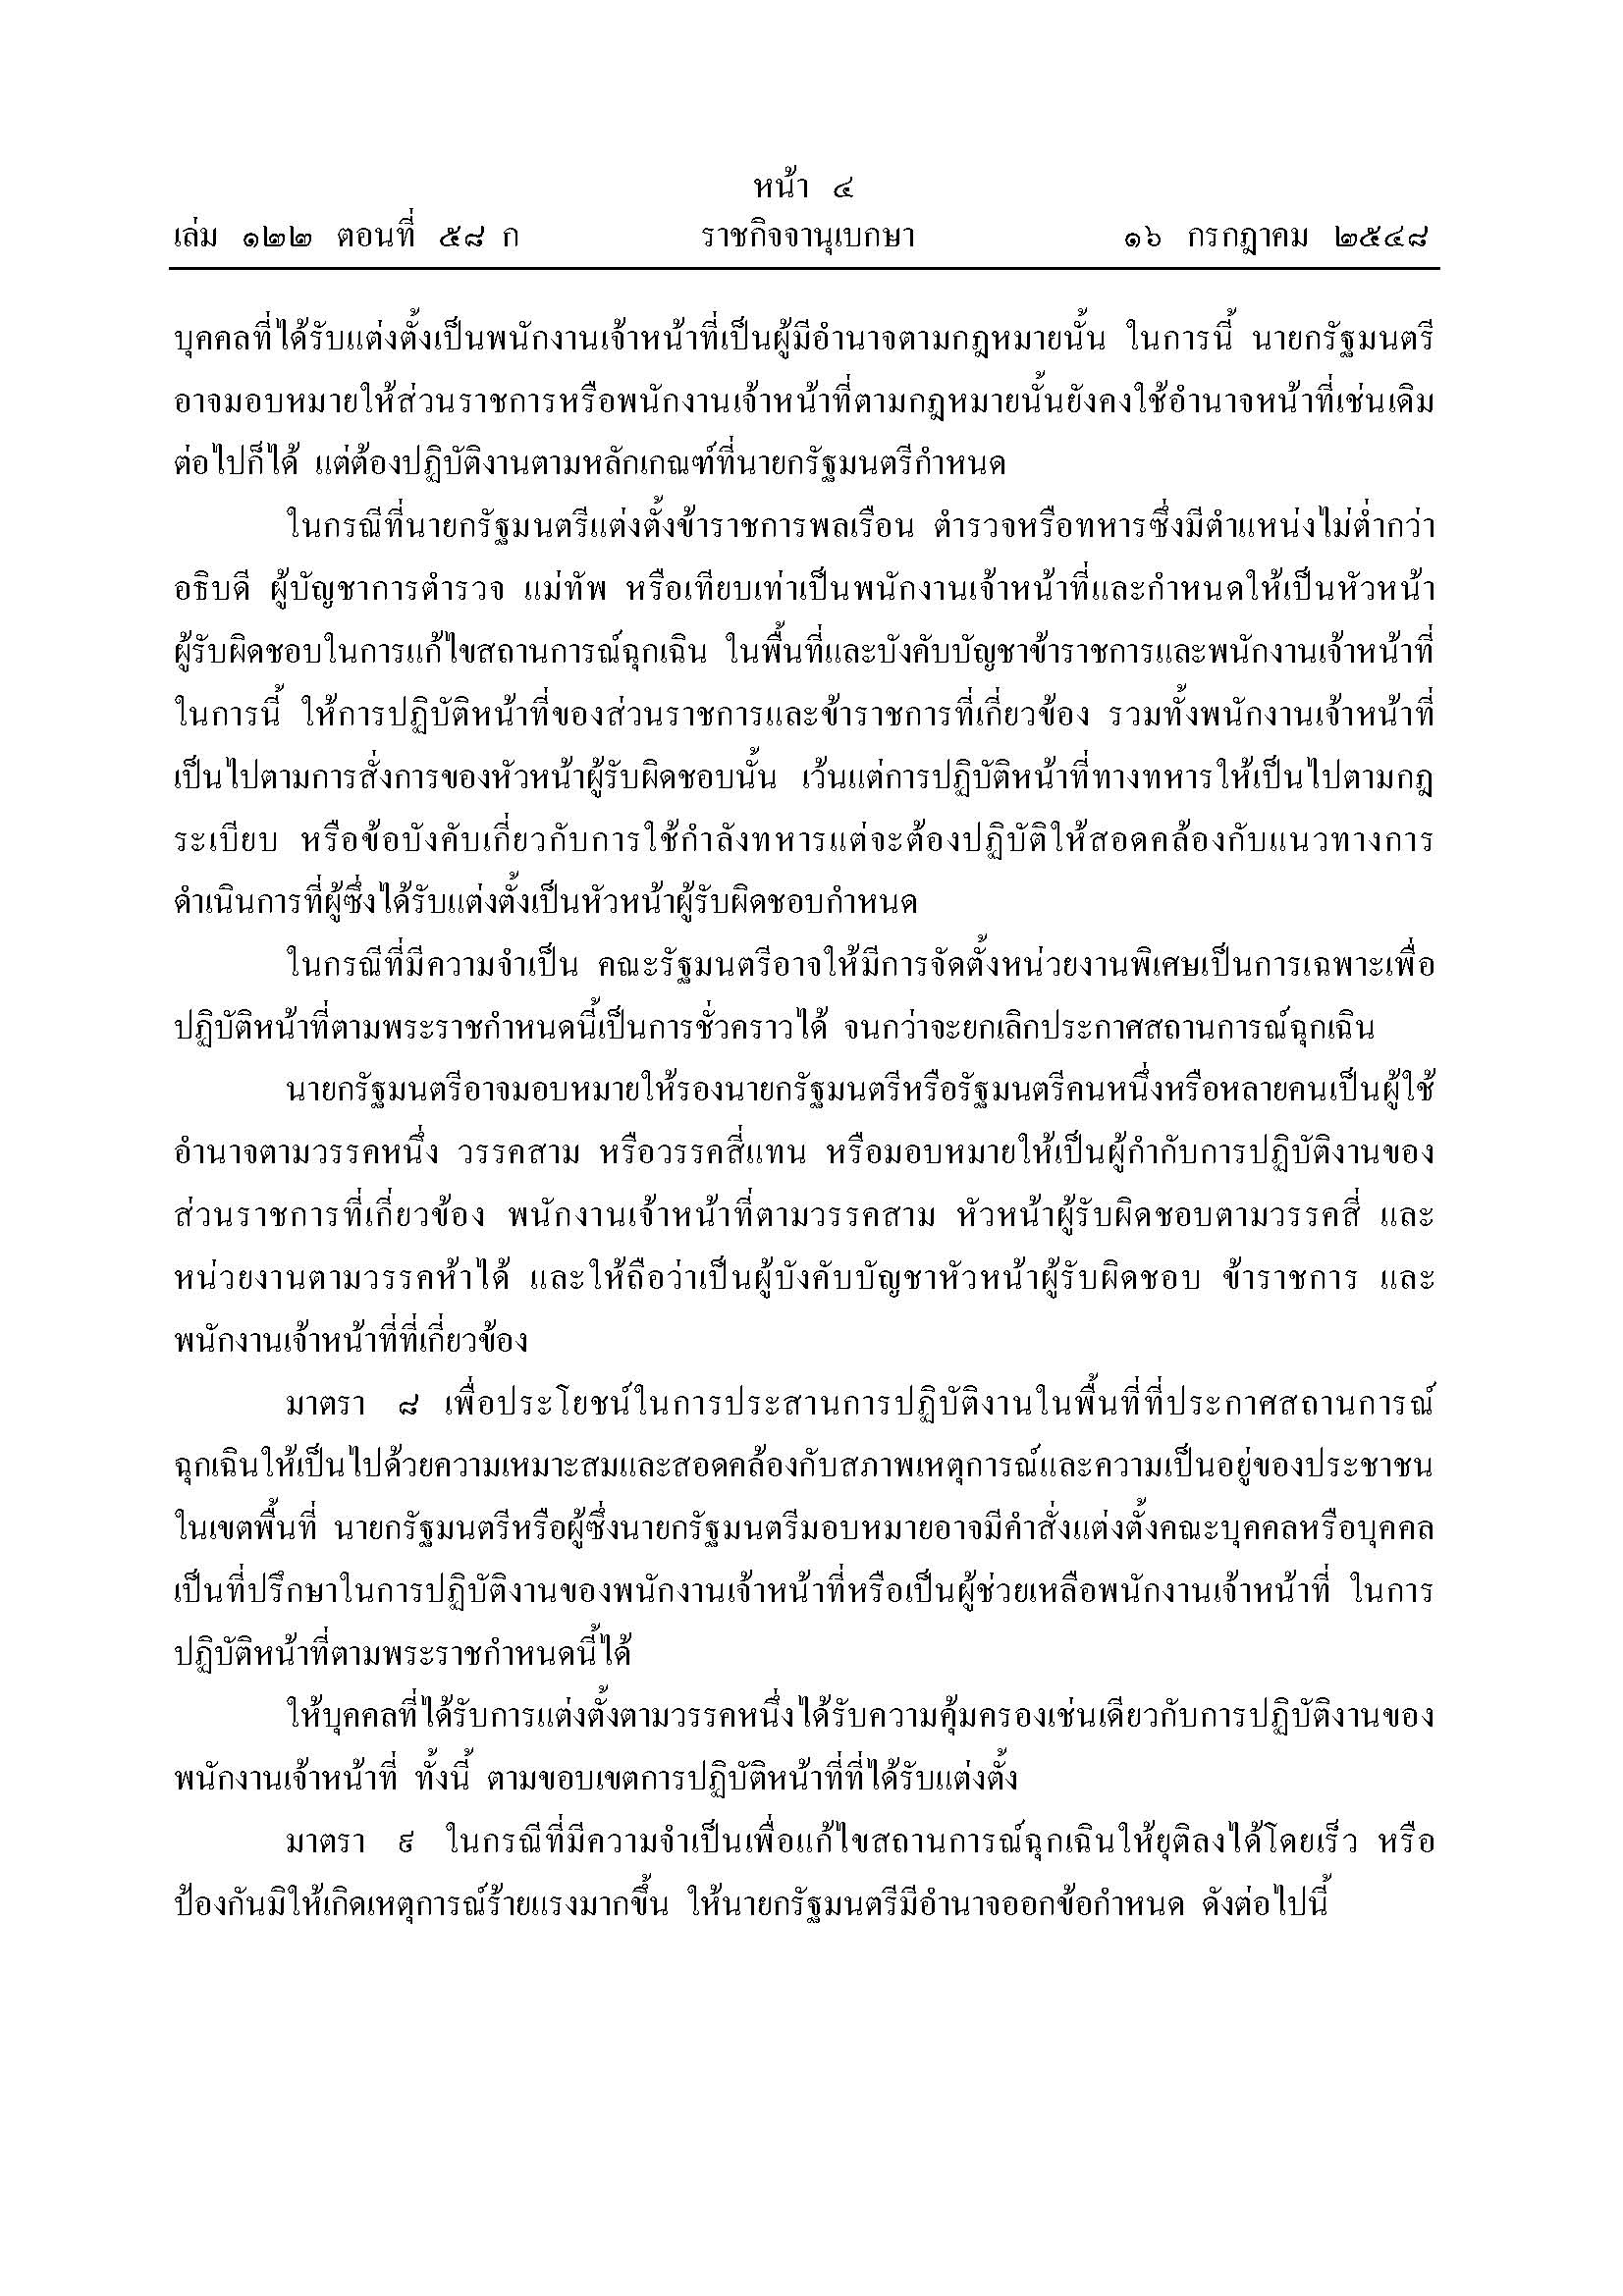 พรก-ฉุกเฉิน-58-01_Page_4